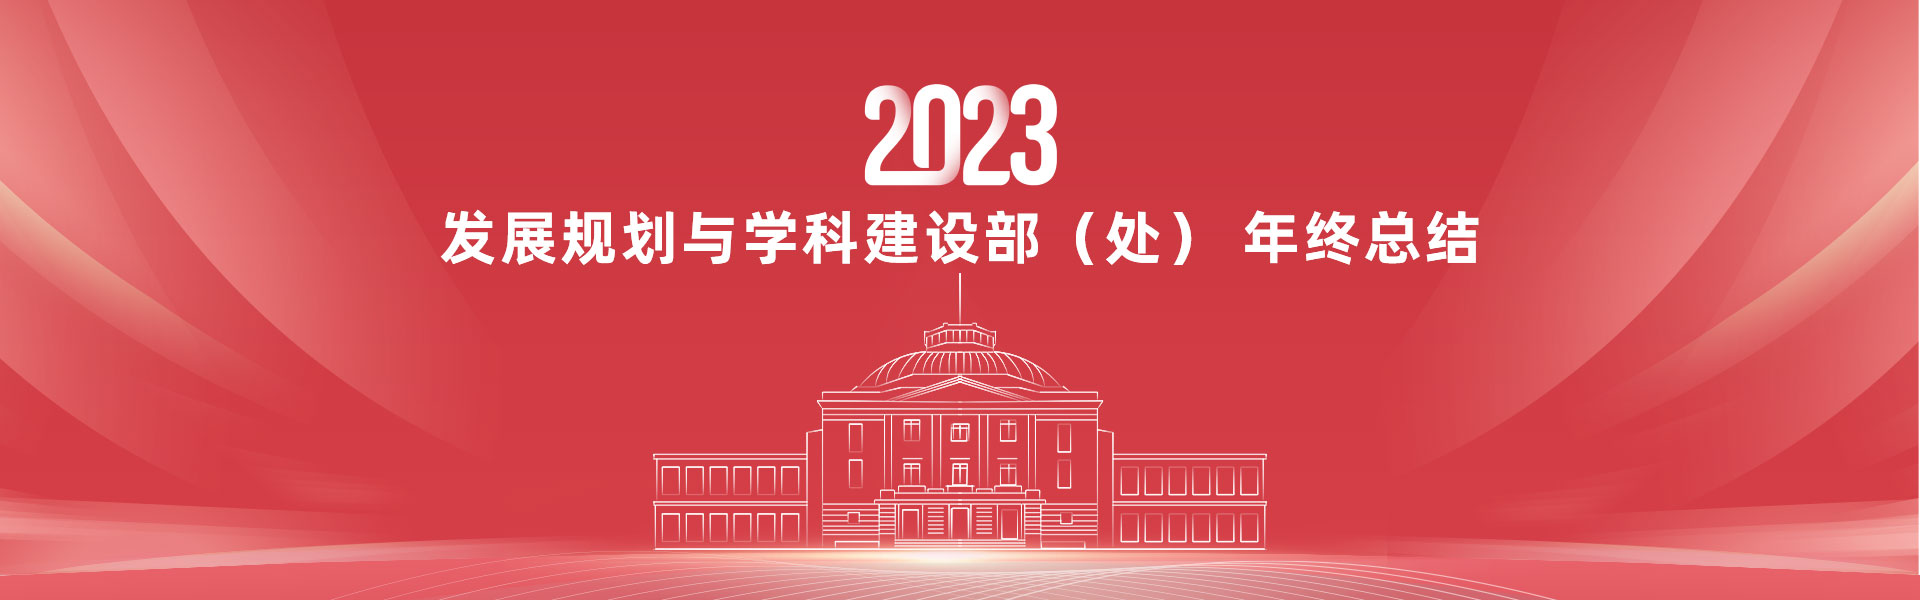 2023发展规划与学科建设处年...